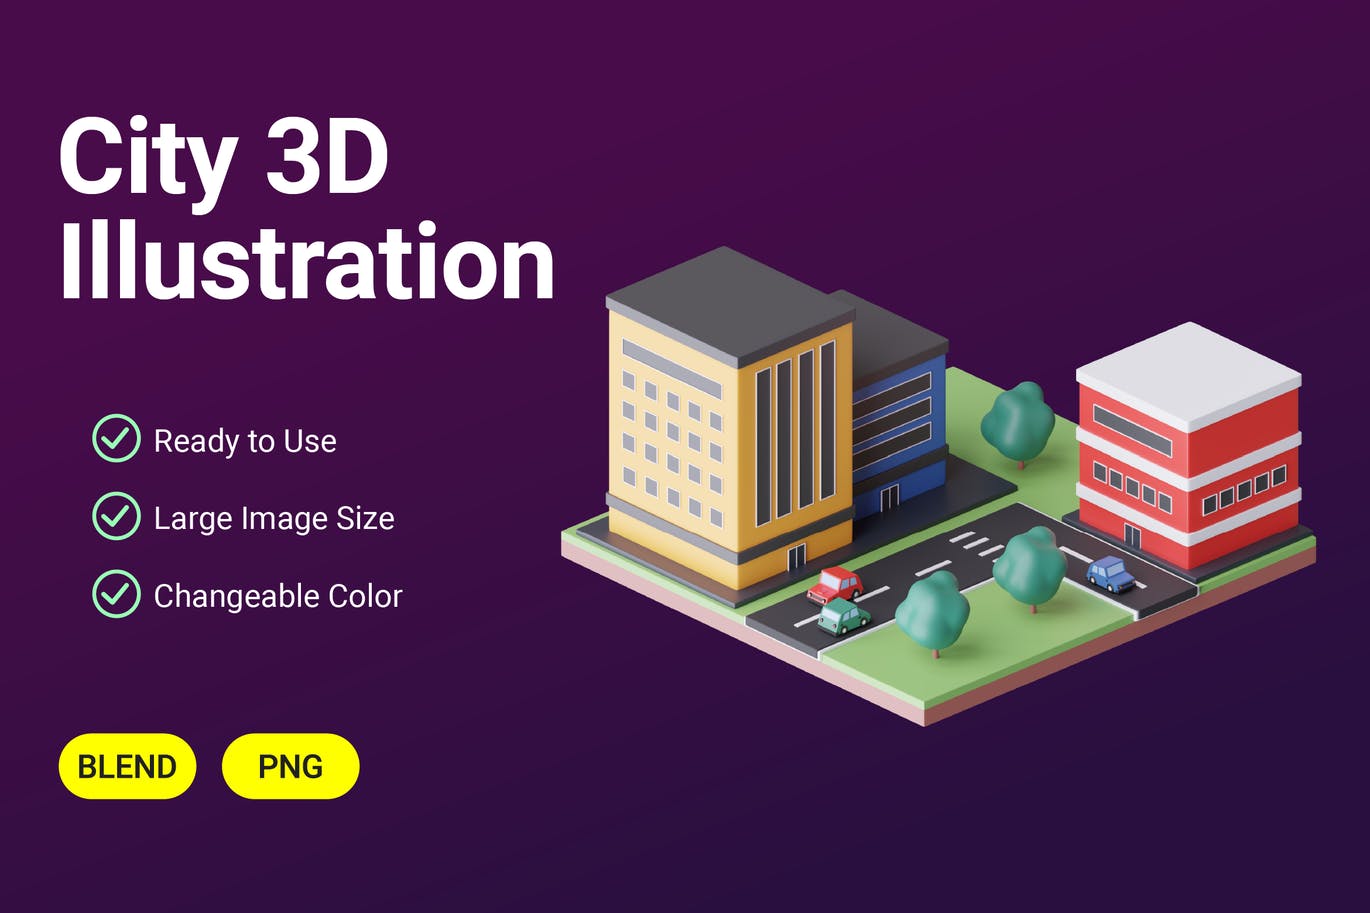 城市3D模型插图 (PNG)